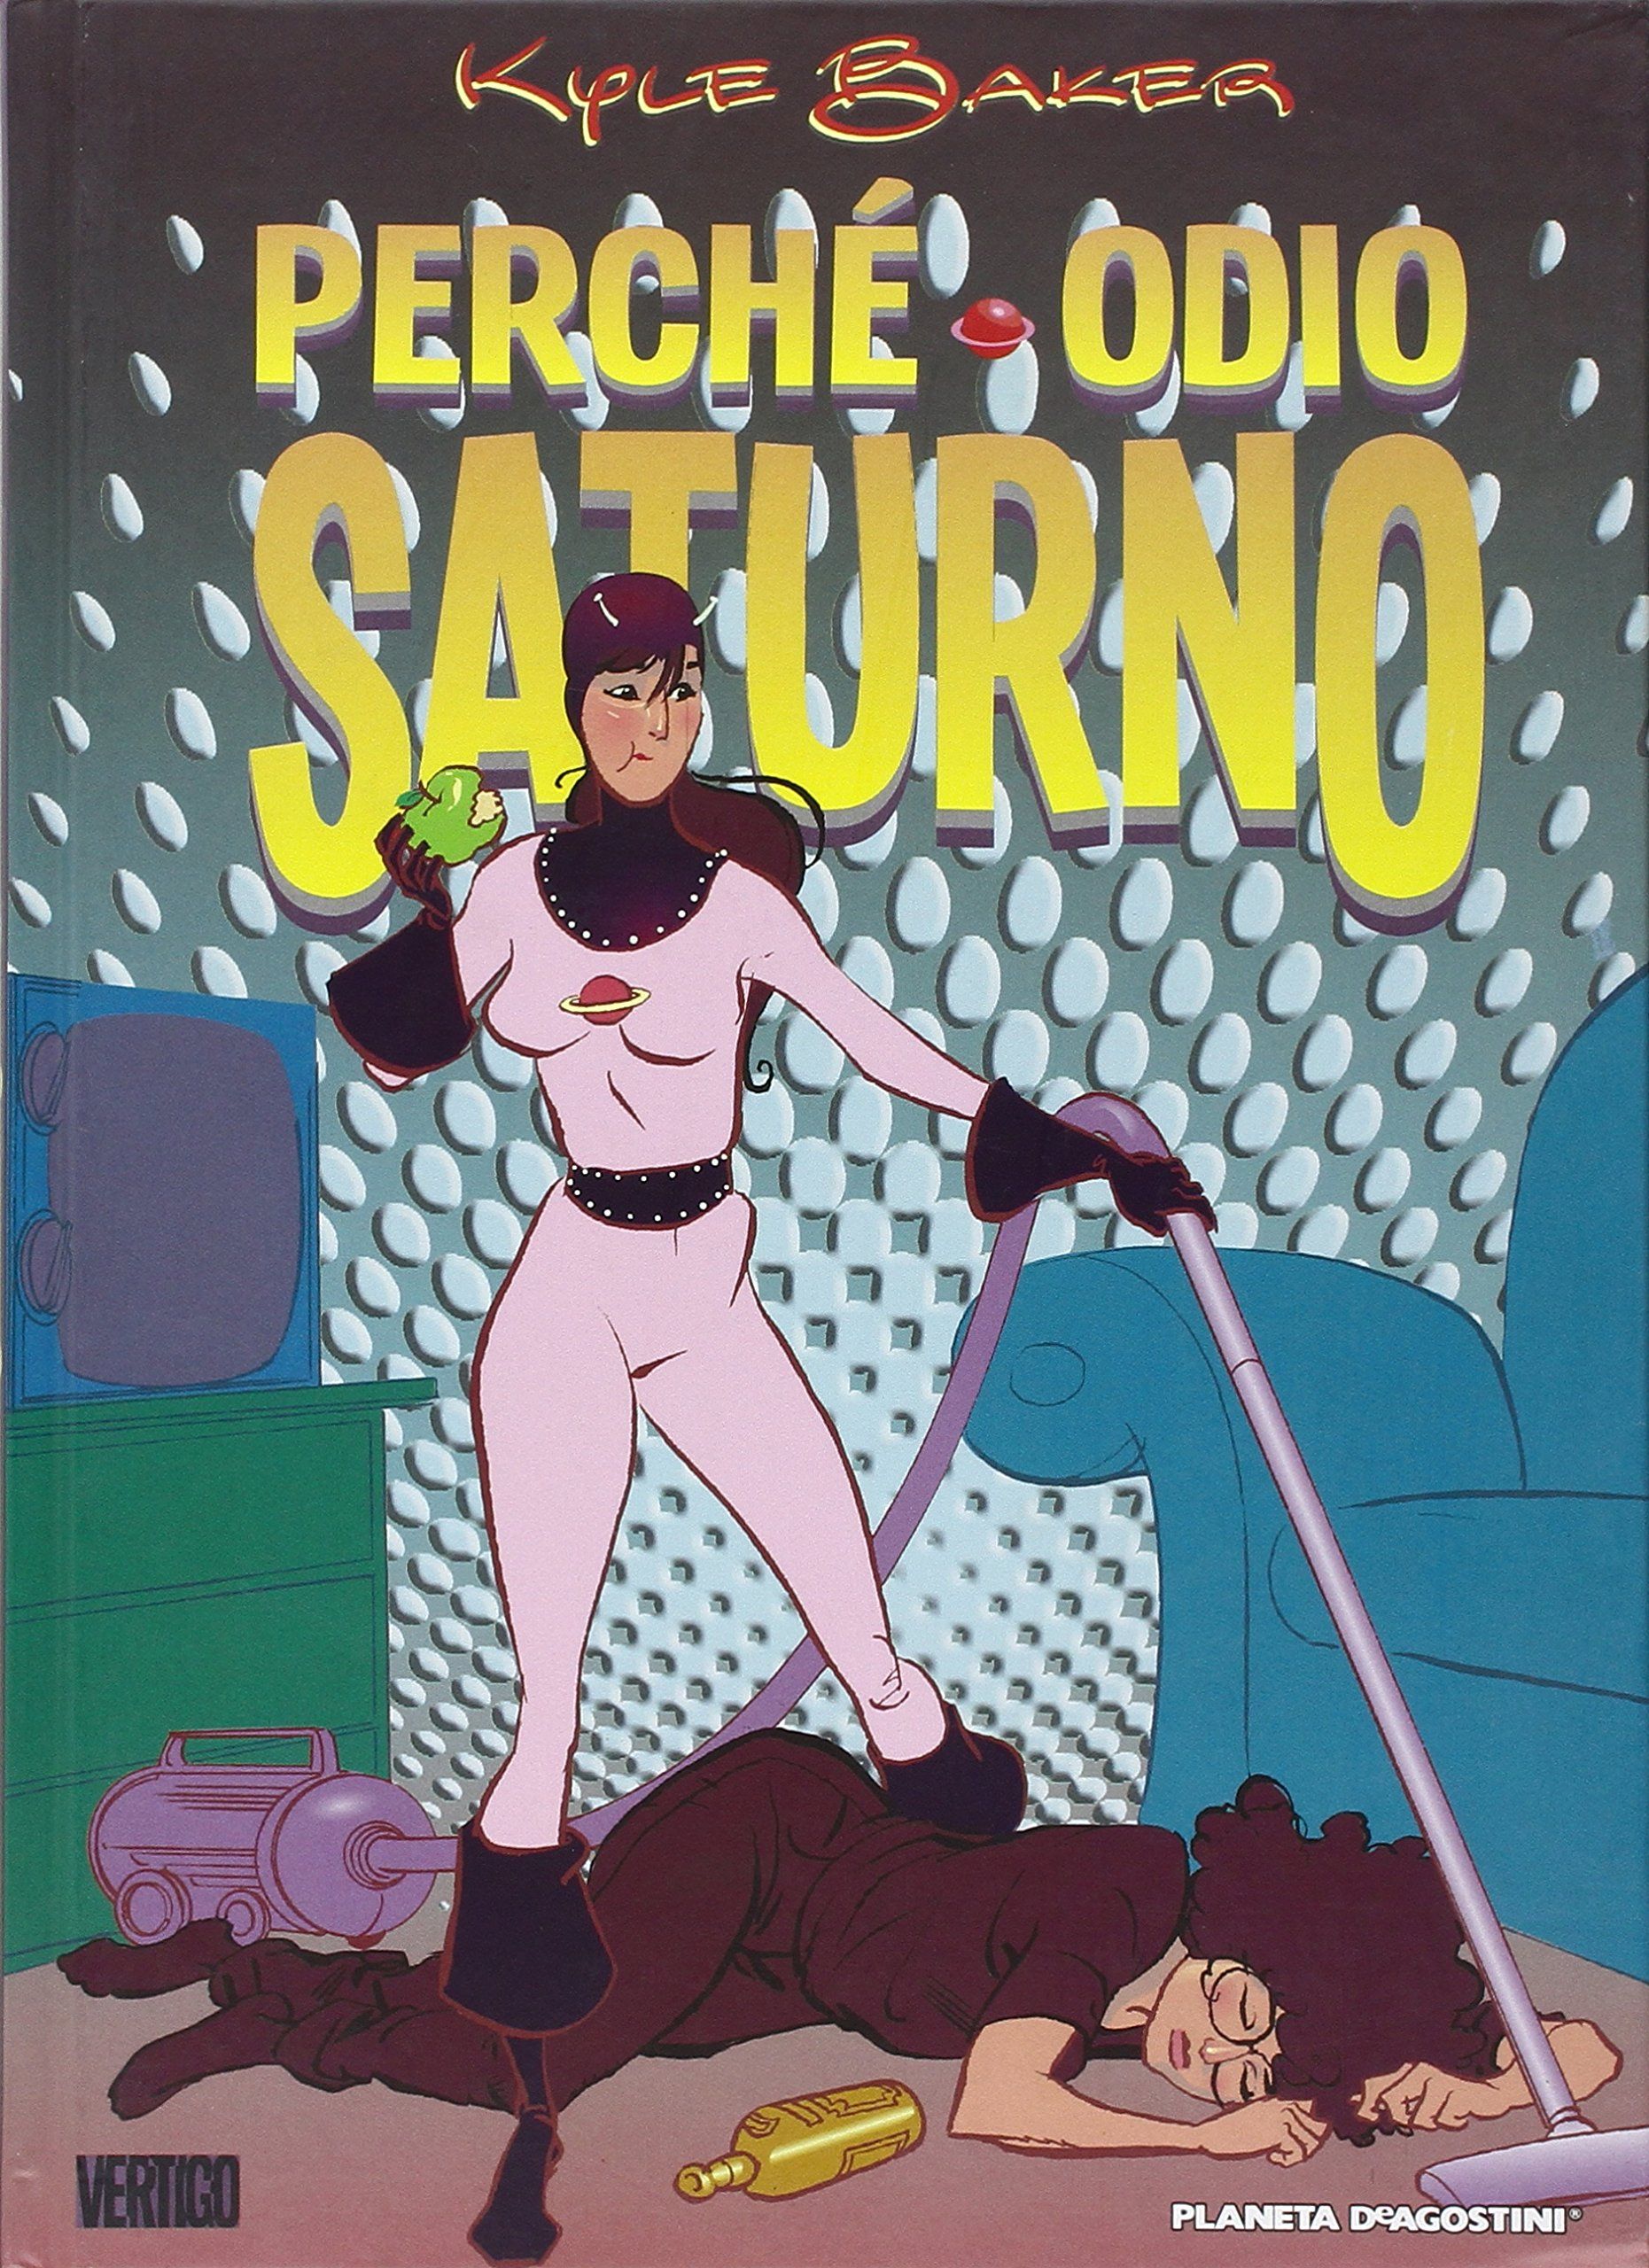 erché Odio Saturno (cover ed. Planeta)